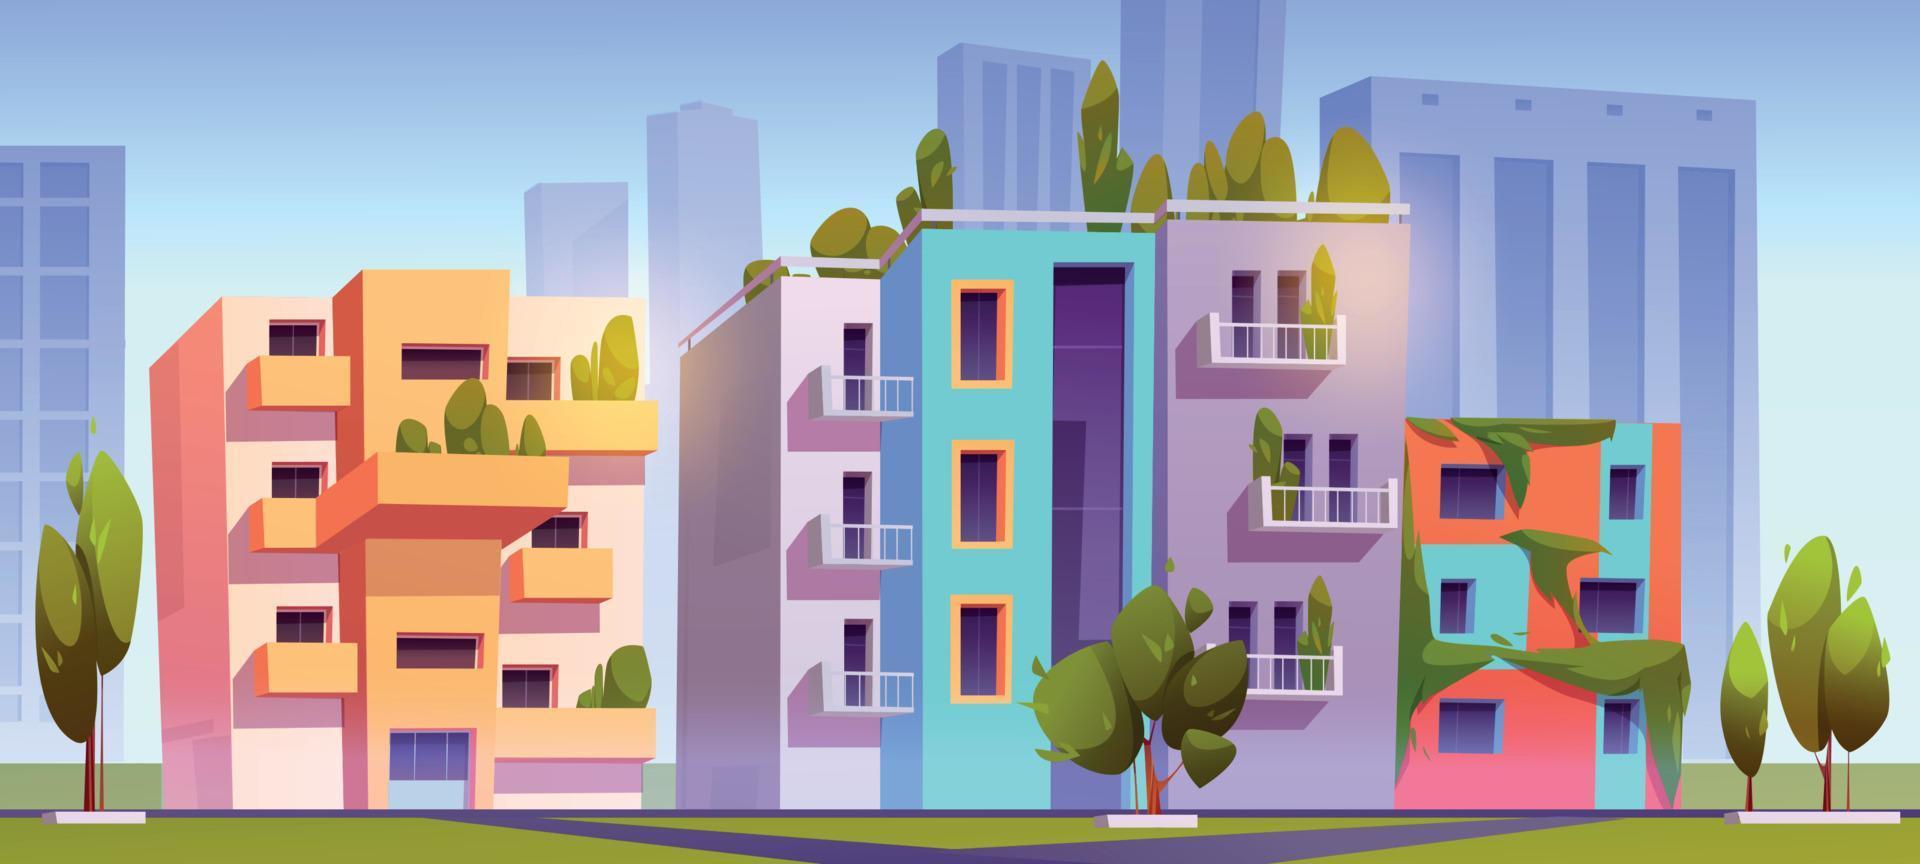 verde città con eco case con giardino su tetto vettore